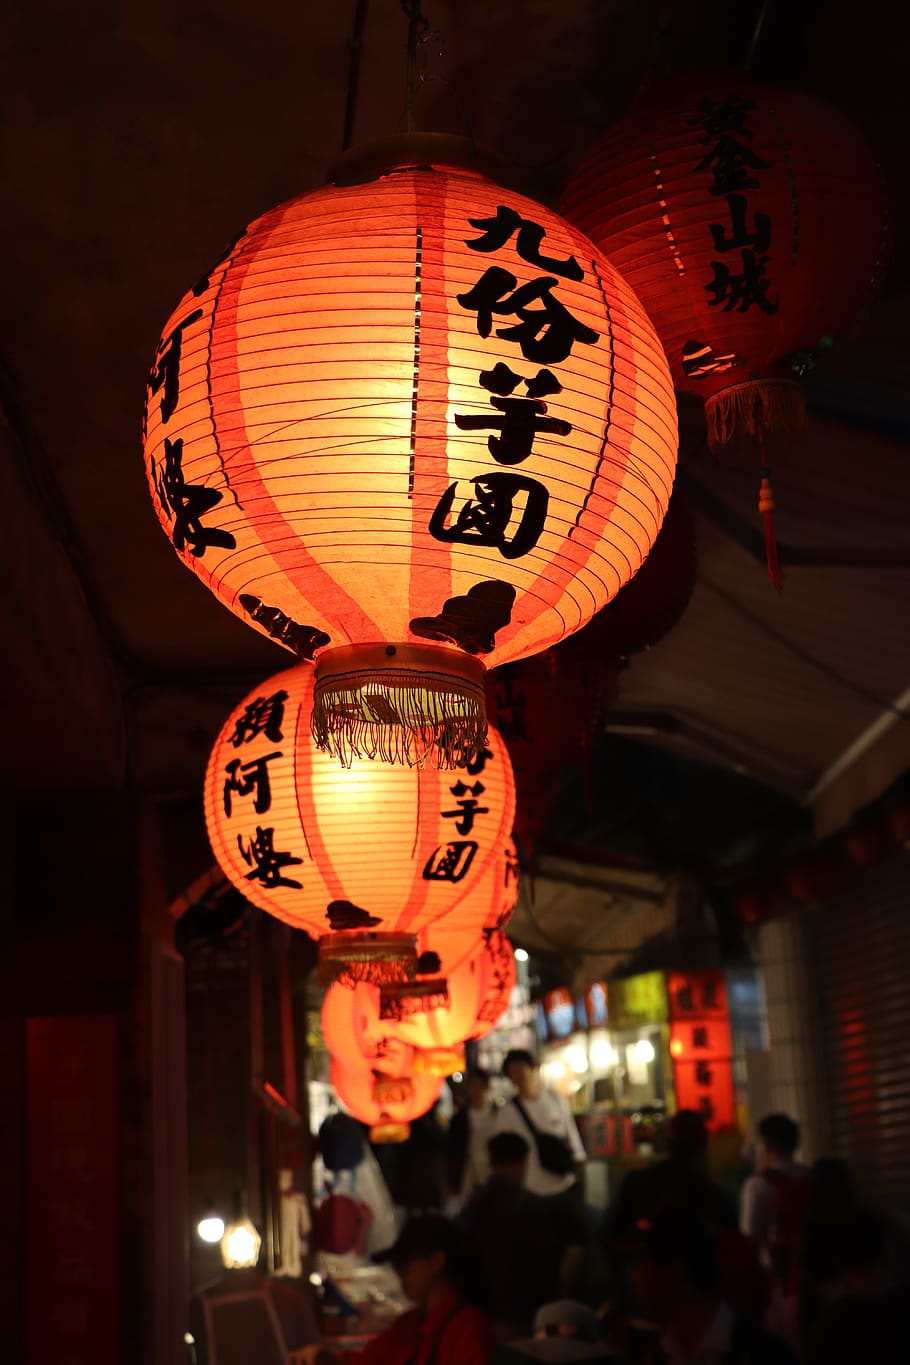 taiwan, luz vermelha, noite, mercado noturno, lanterna, equipamento de iluminação, lanterna chinesa, iluminado, de suspensão, roteiro